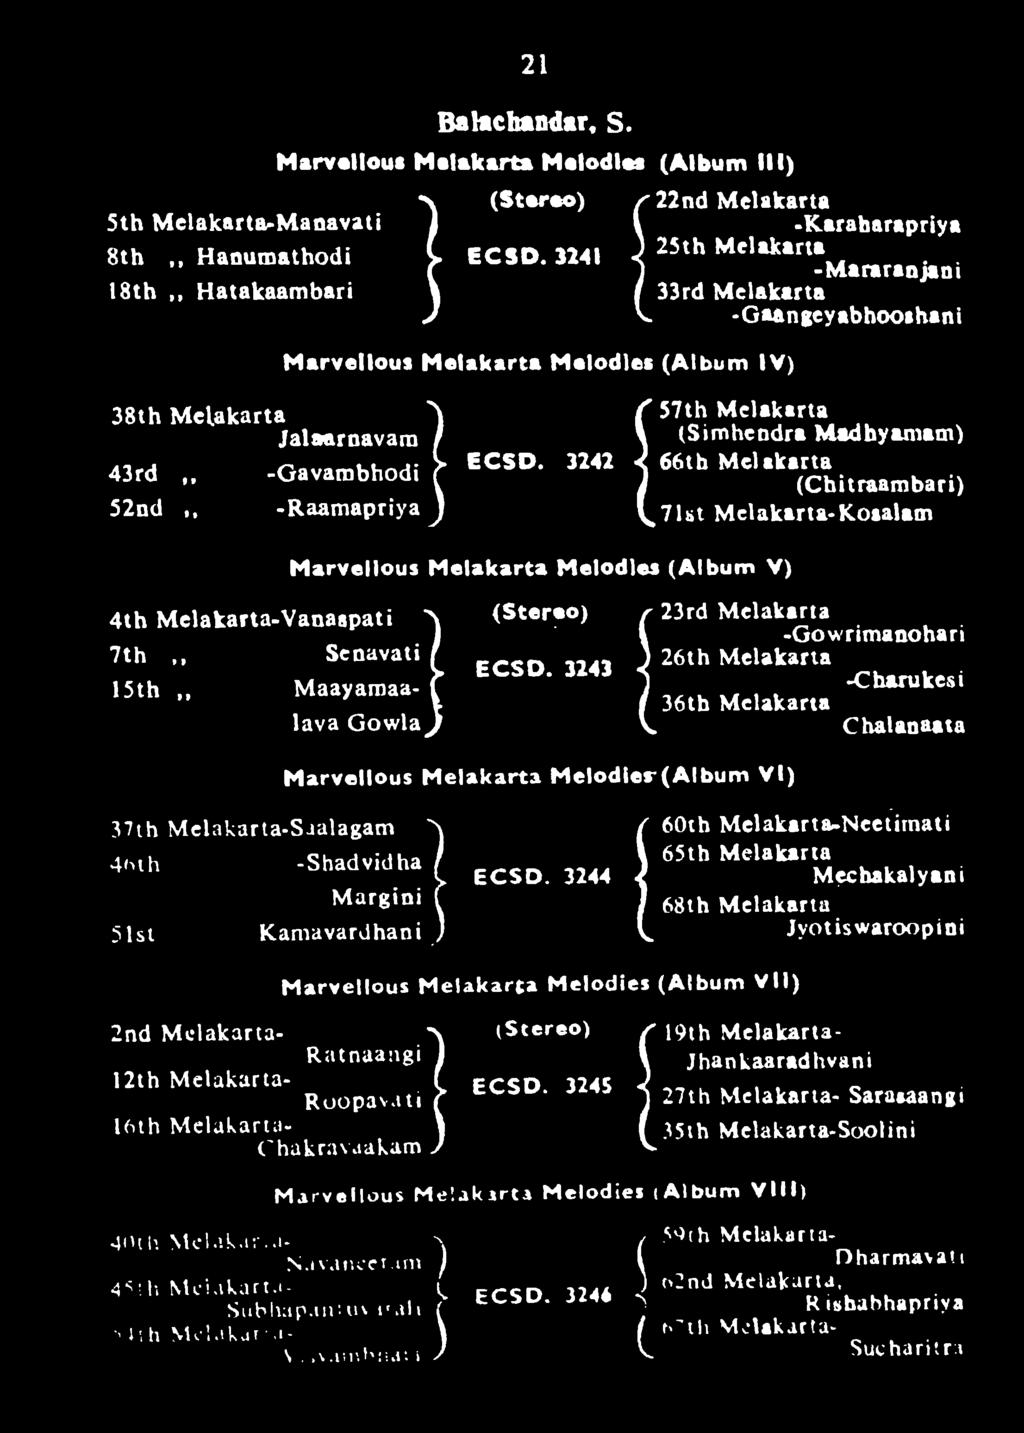 Marvellous Melakarta Melodies (Album V) 38th Melakarta Jalaarnavam 43rd,, -Gavarobhodi 52nd -Raamapriya 57th Melakarta (Simhcndra Madhyamam) 66th Melakarta (Chitraambari) 71st Melakarta-Kosalam